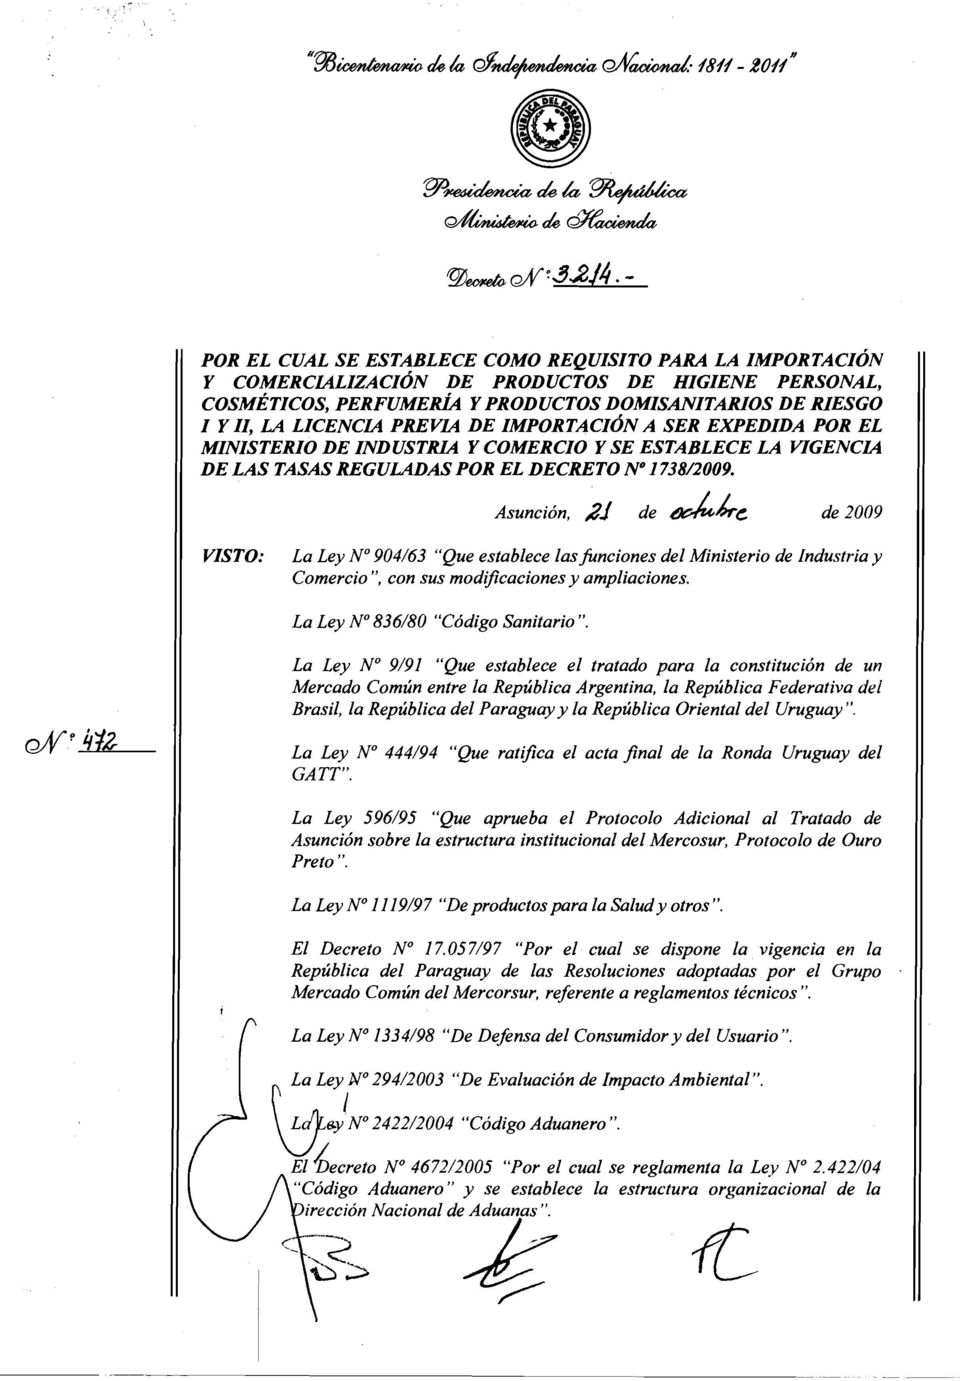 La Ley No 9/91 "Que establece el tratado para la constitución de un Mercado Común entre la República Argentina, la República Federativa dei Brasil, la República del Paraguay y la República Oriental